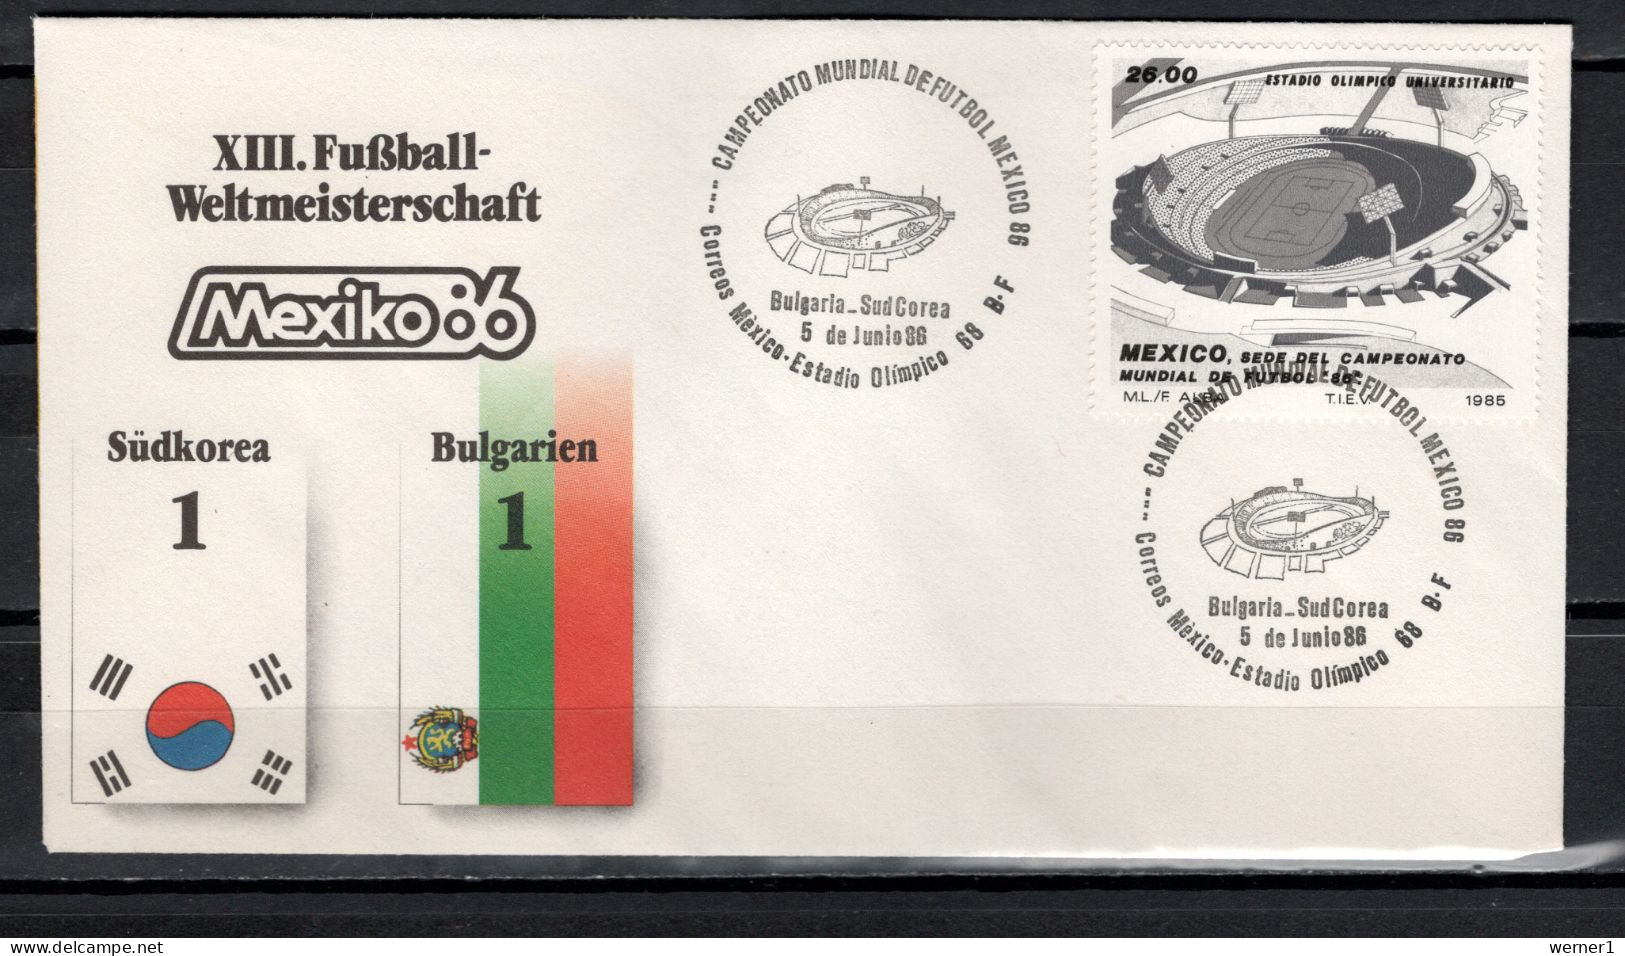 Mexico 1986 Football Soccer World Cup Commemorative Cover Match South Korea - Bulgaria  1 : 1 - 1986 – Mexiko